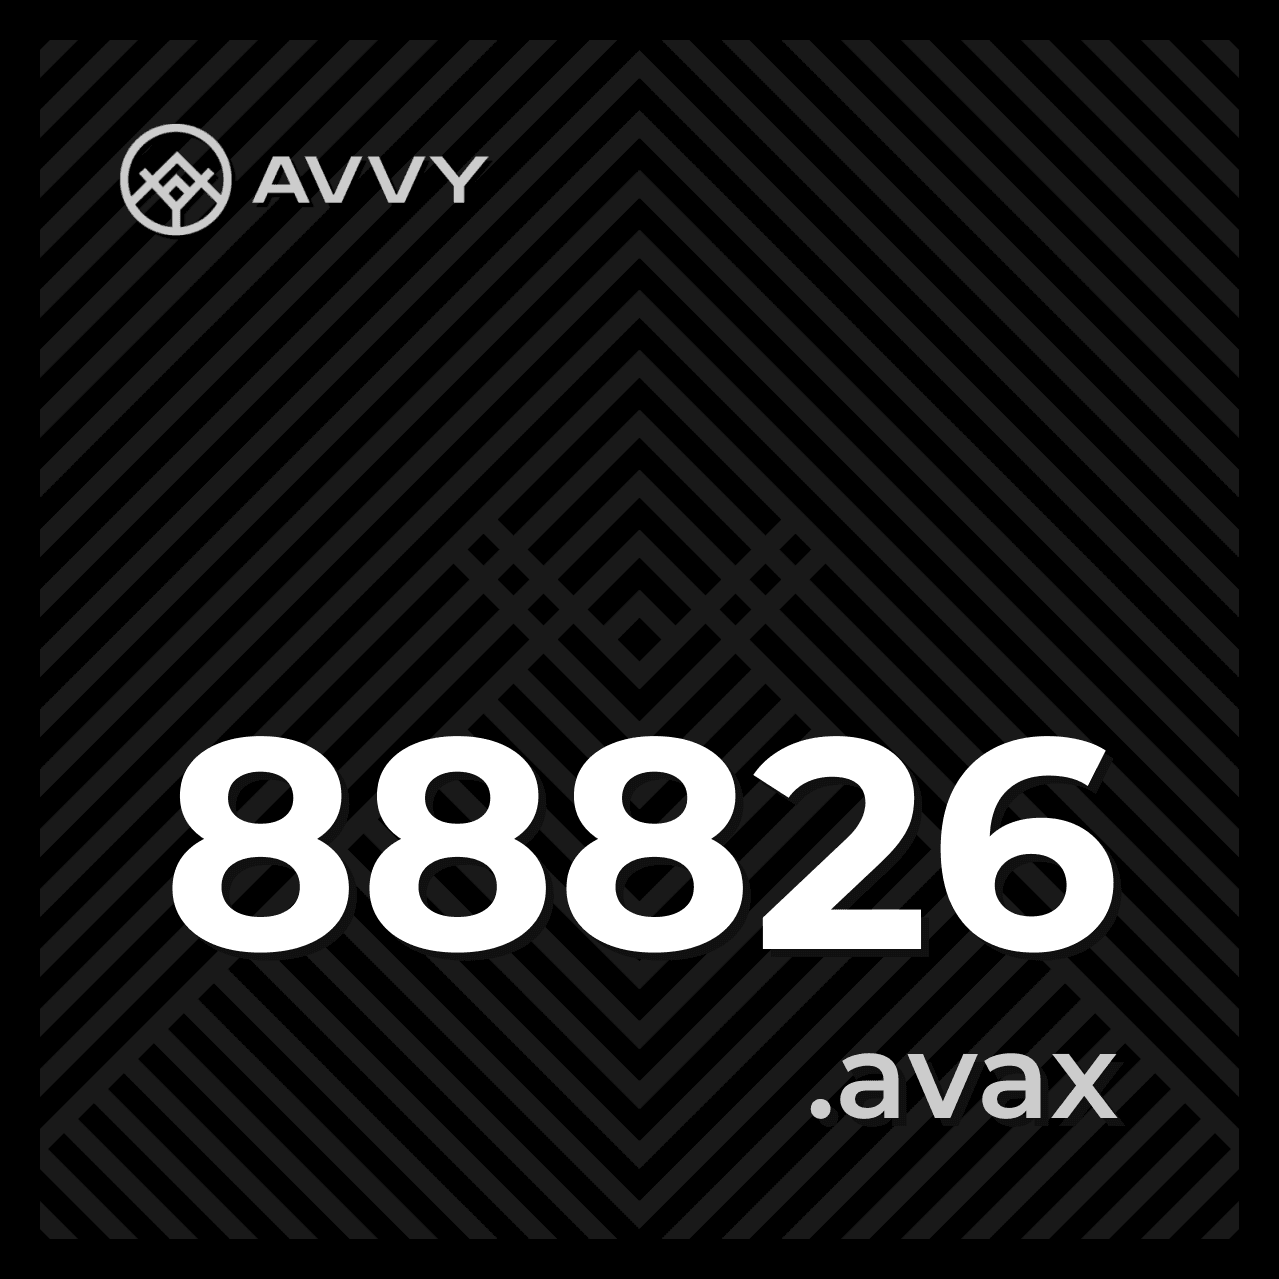 88826.avax